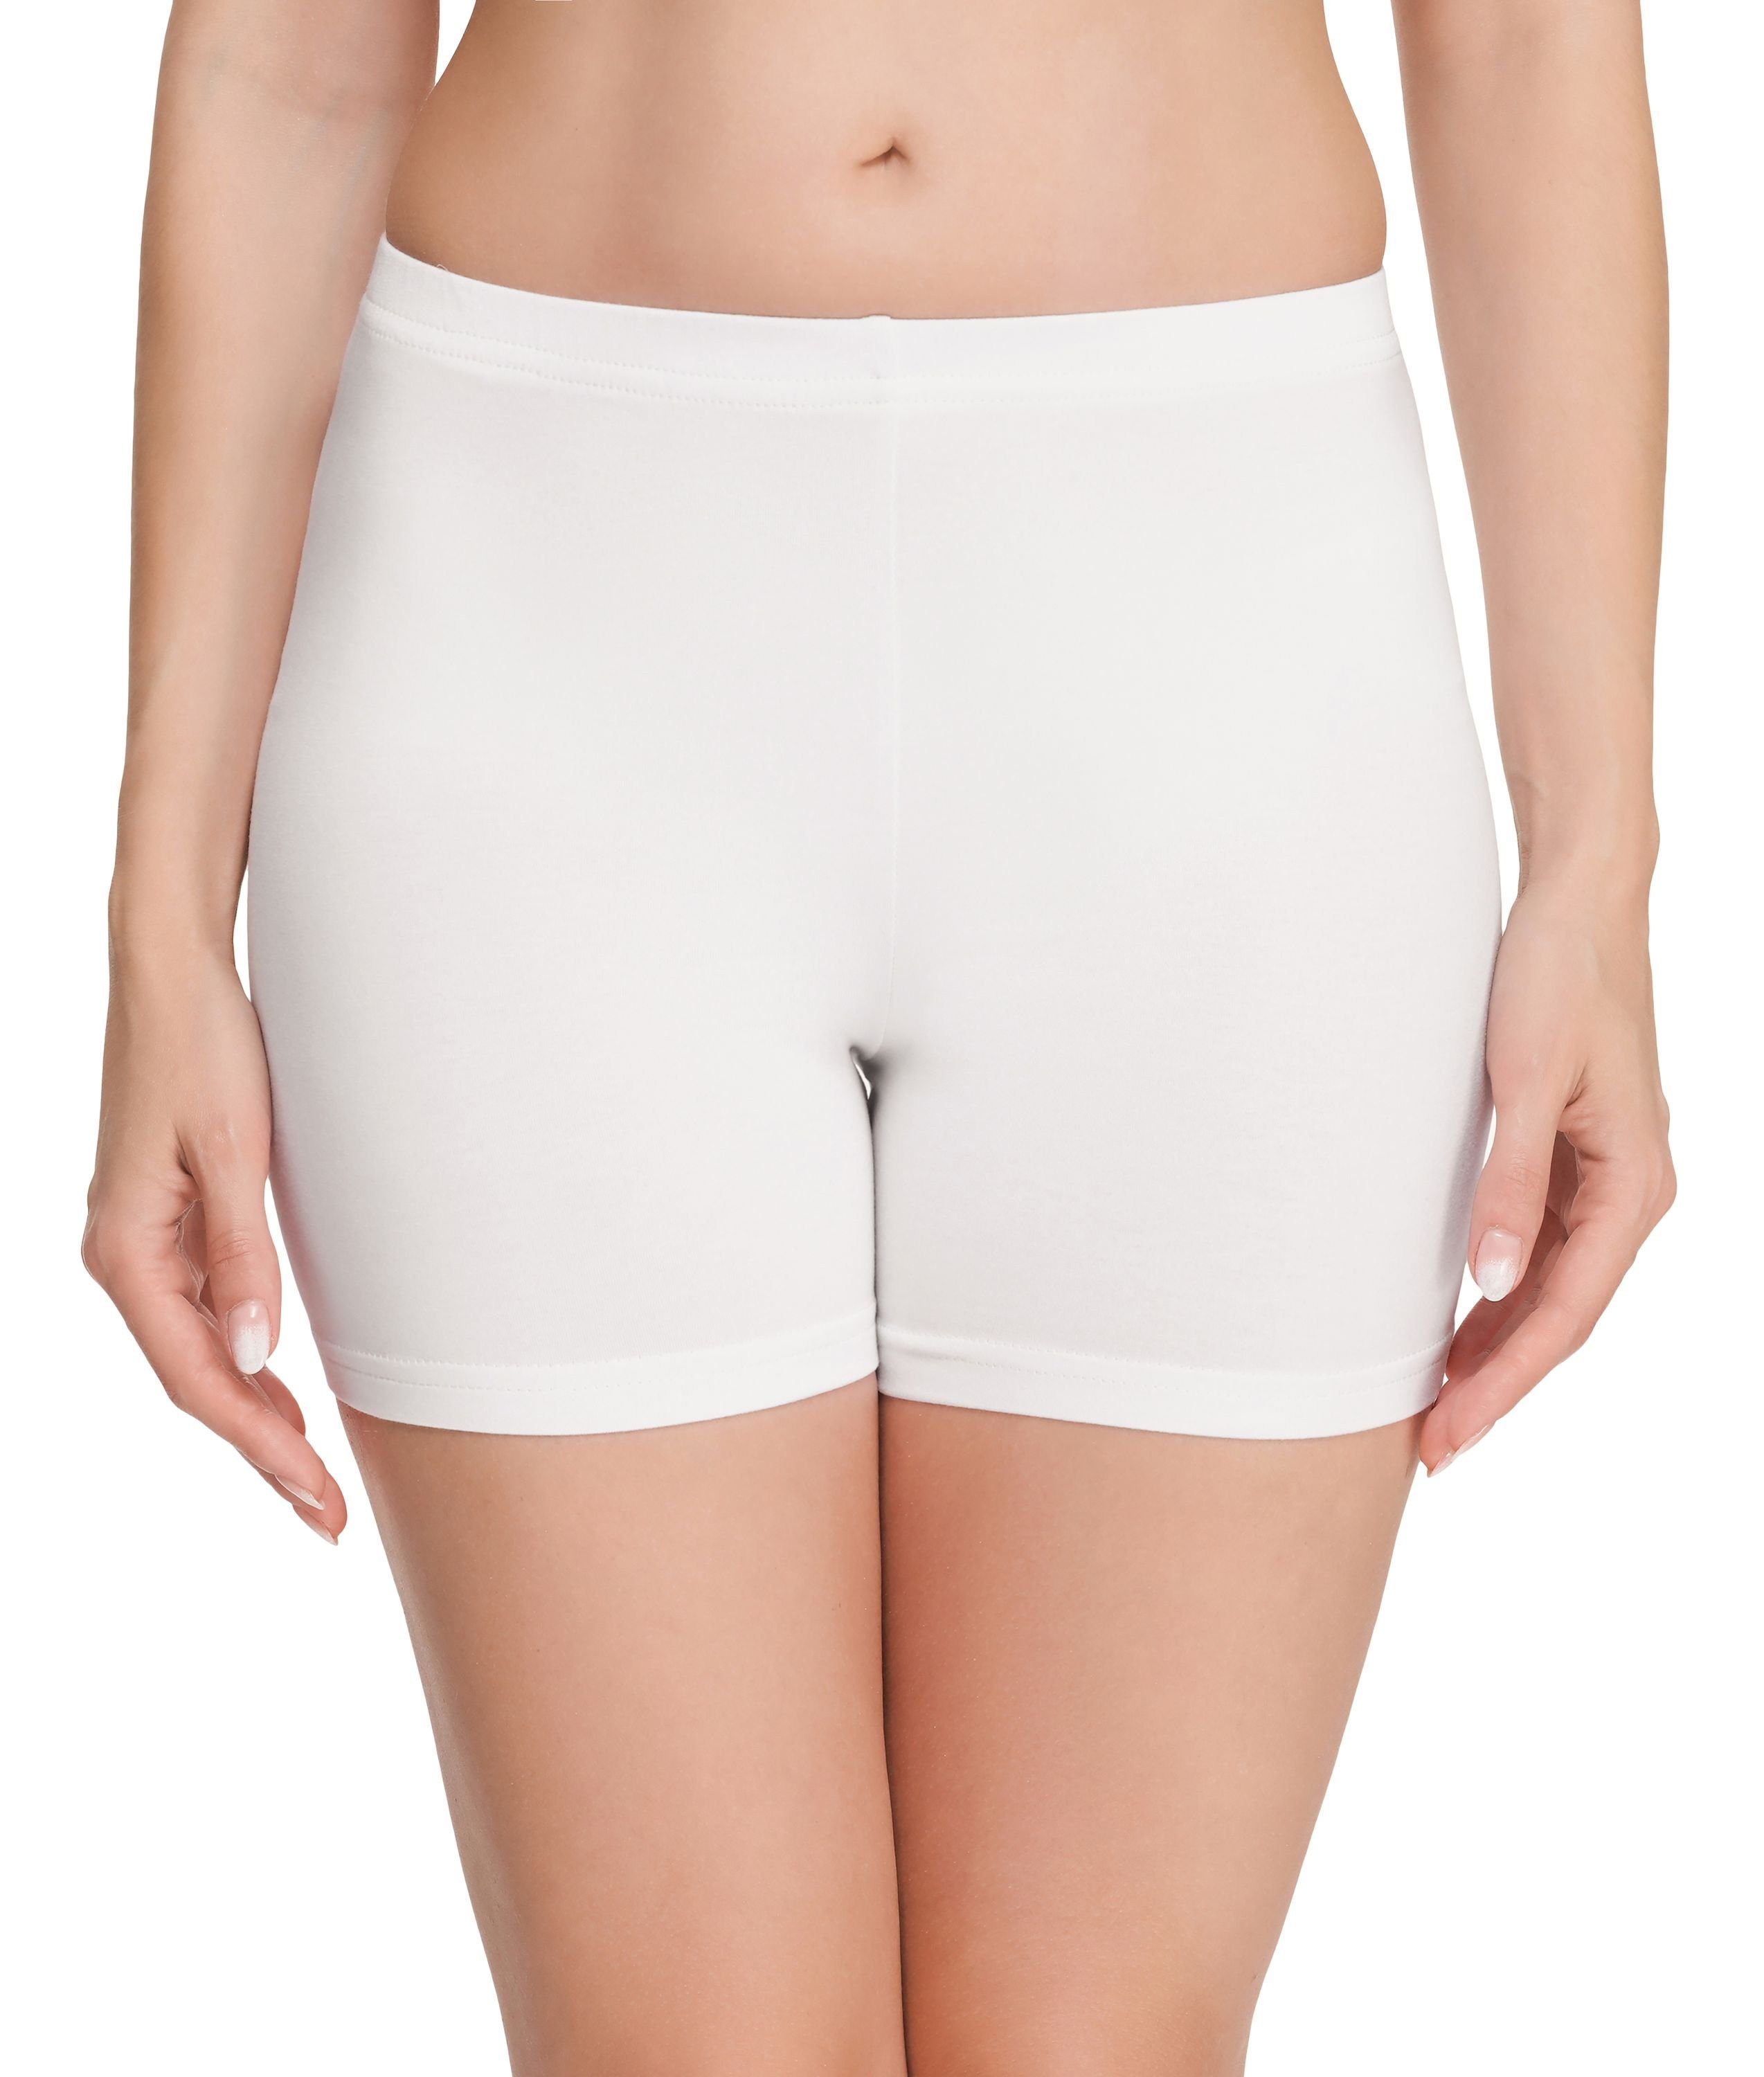 Style elastischer Radlerhose Weiß Hotpants Unterhose (1-tlg) Merry MS10-392 Damen Shorts Leggings Bund Boxershorts